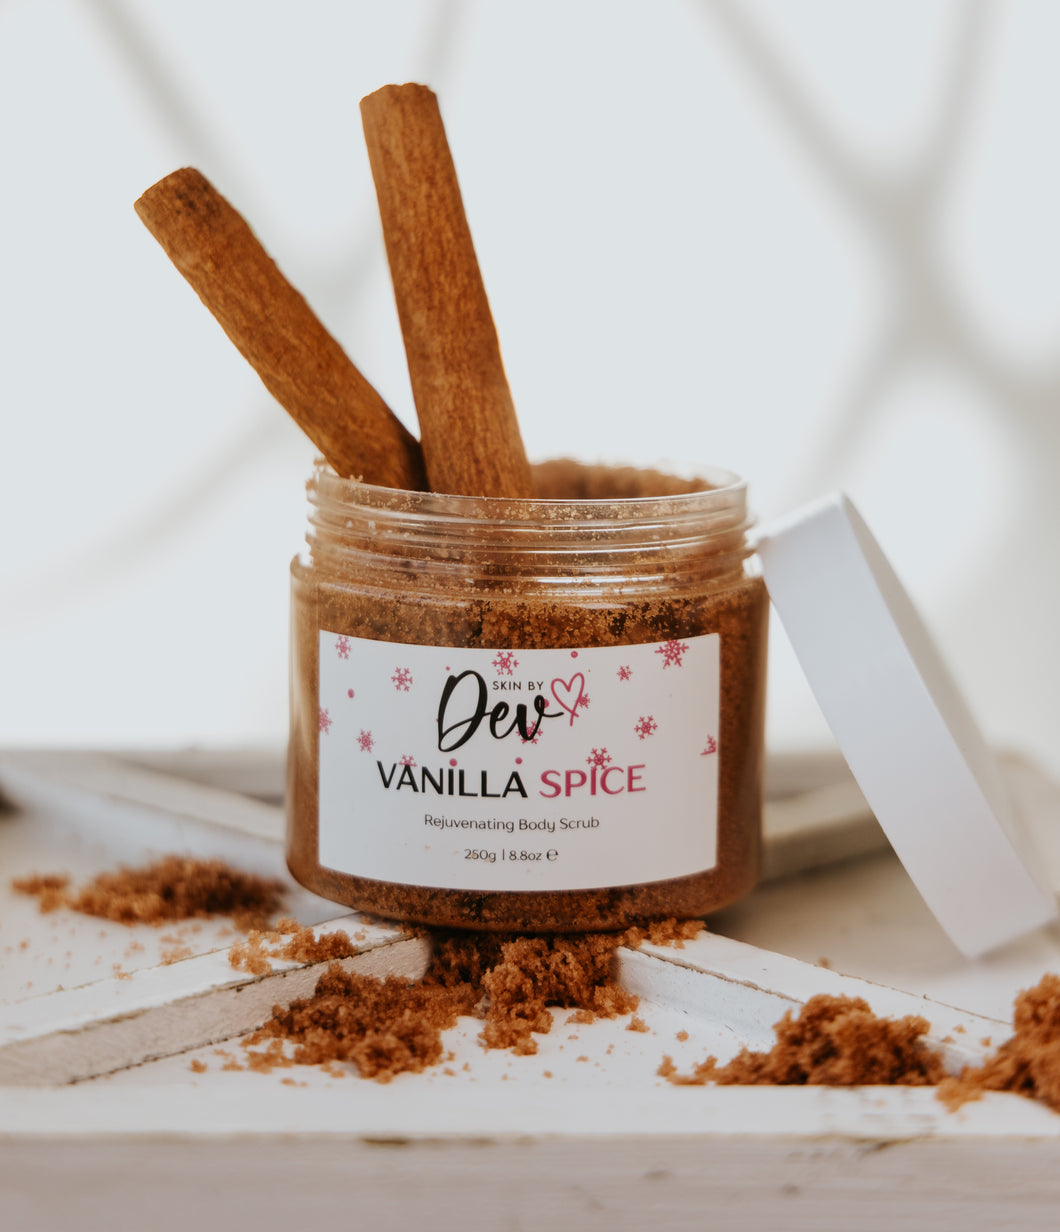 Vanilla Spice Rejuvenating Body Scrub